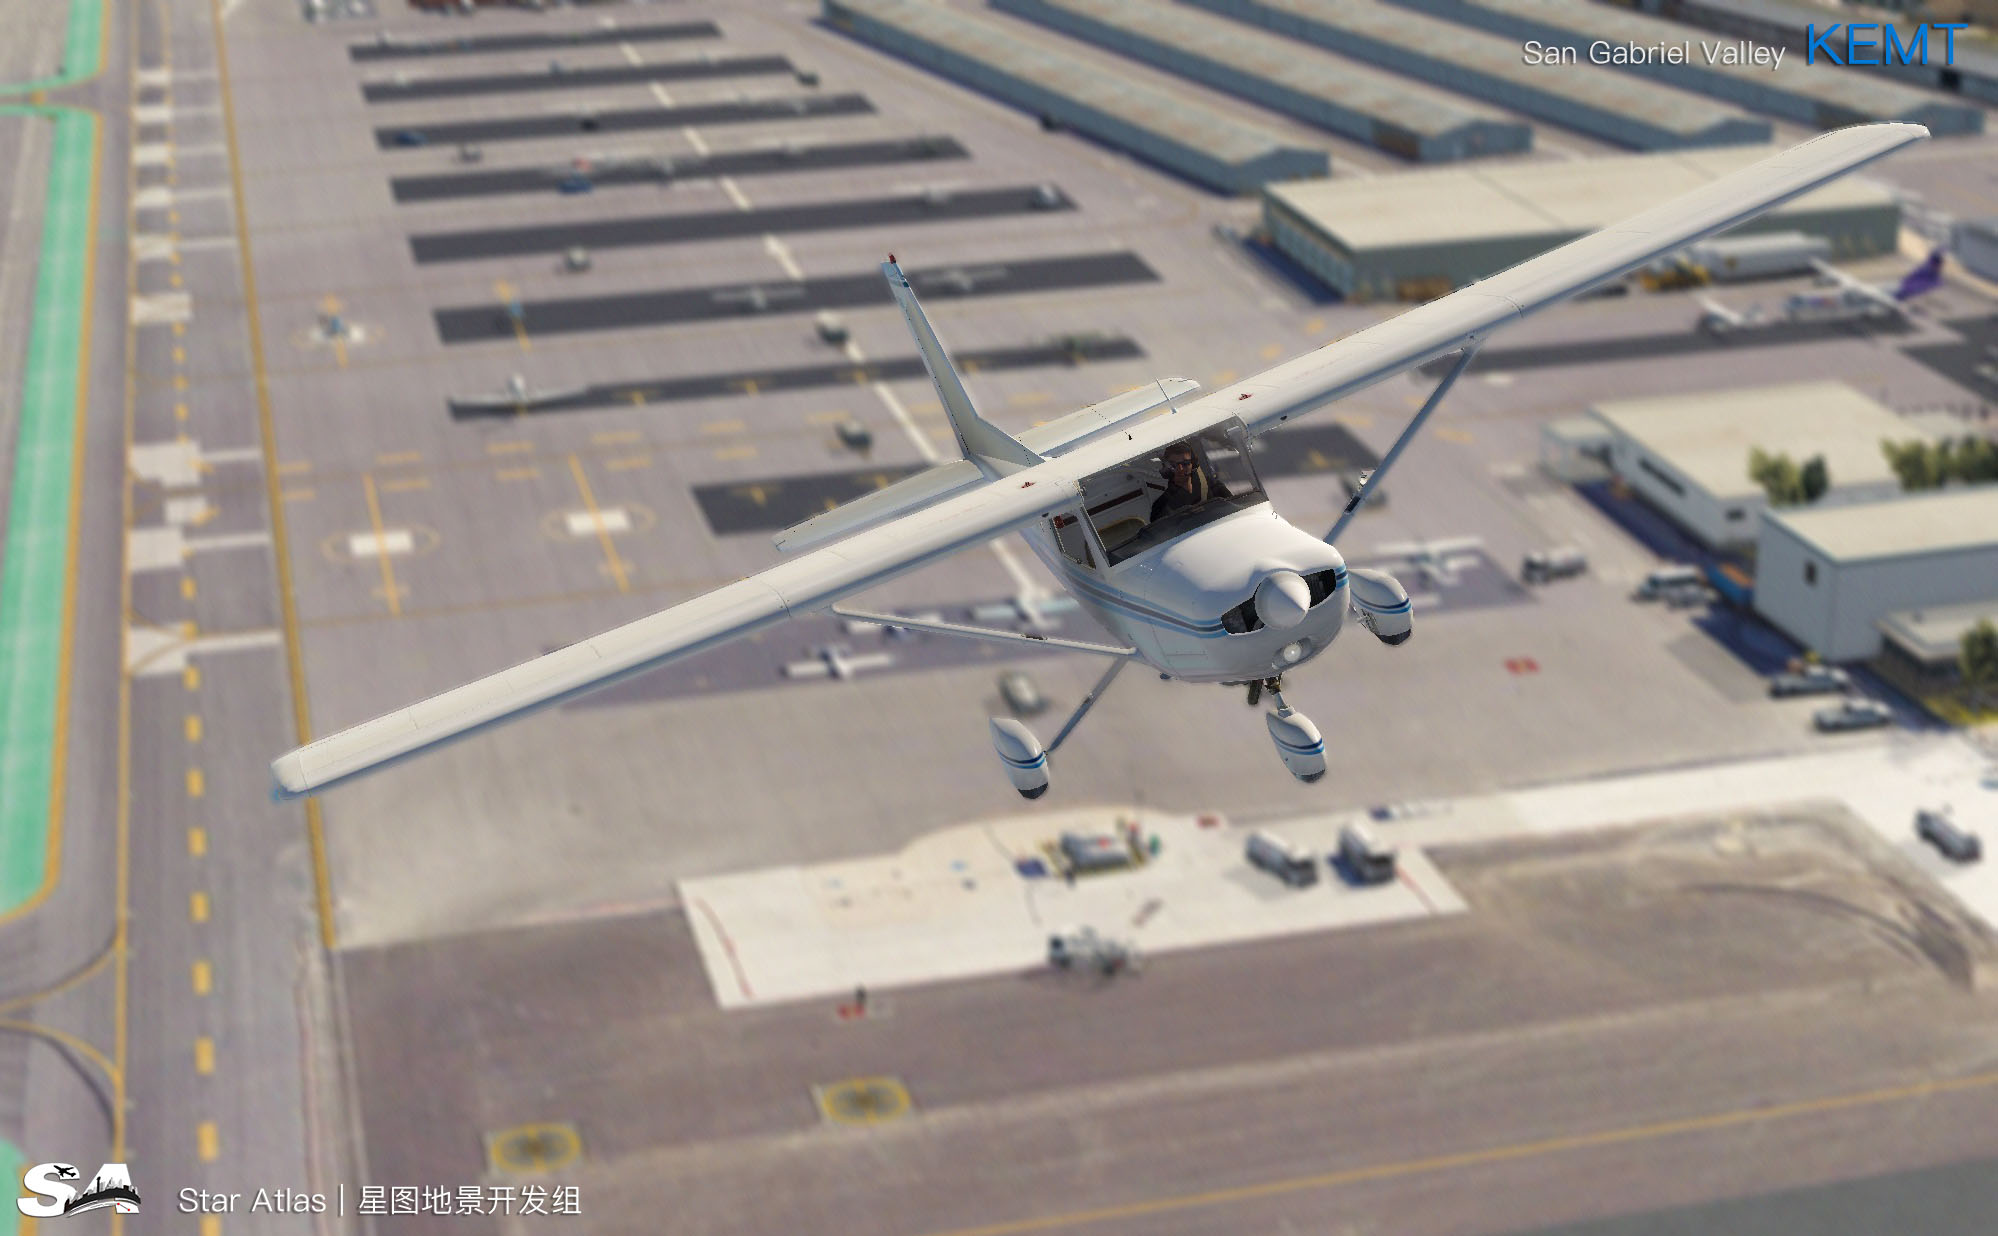 【X-Plane】KEMT-圣盖博谷机场 HD 1.0-5150 